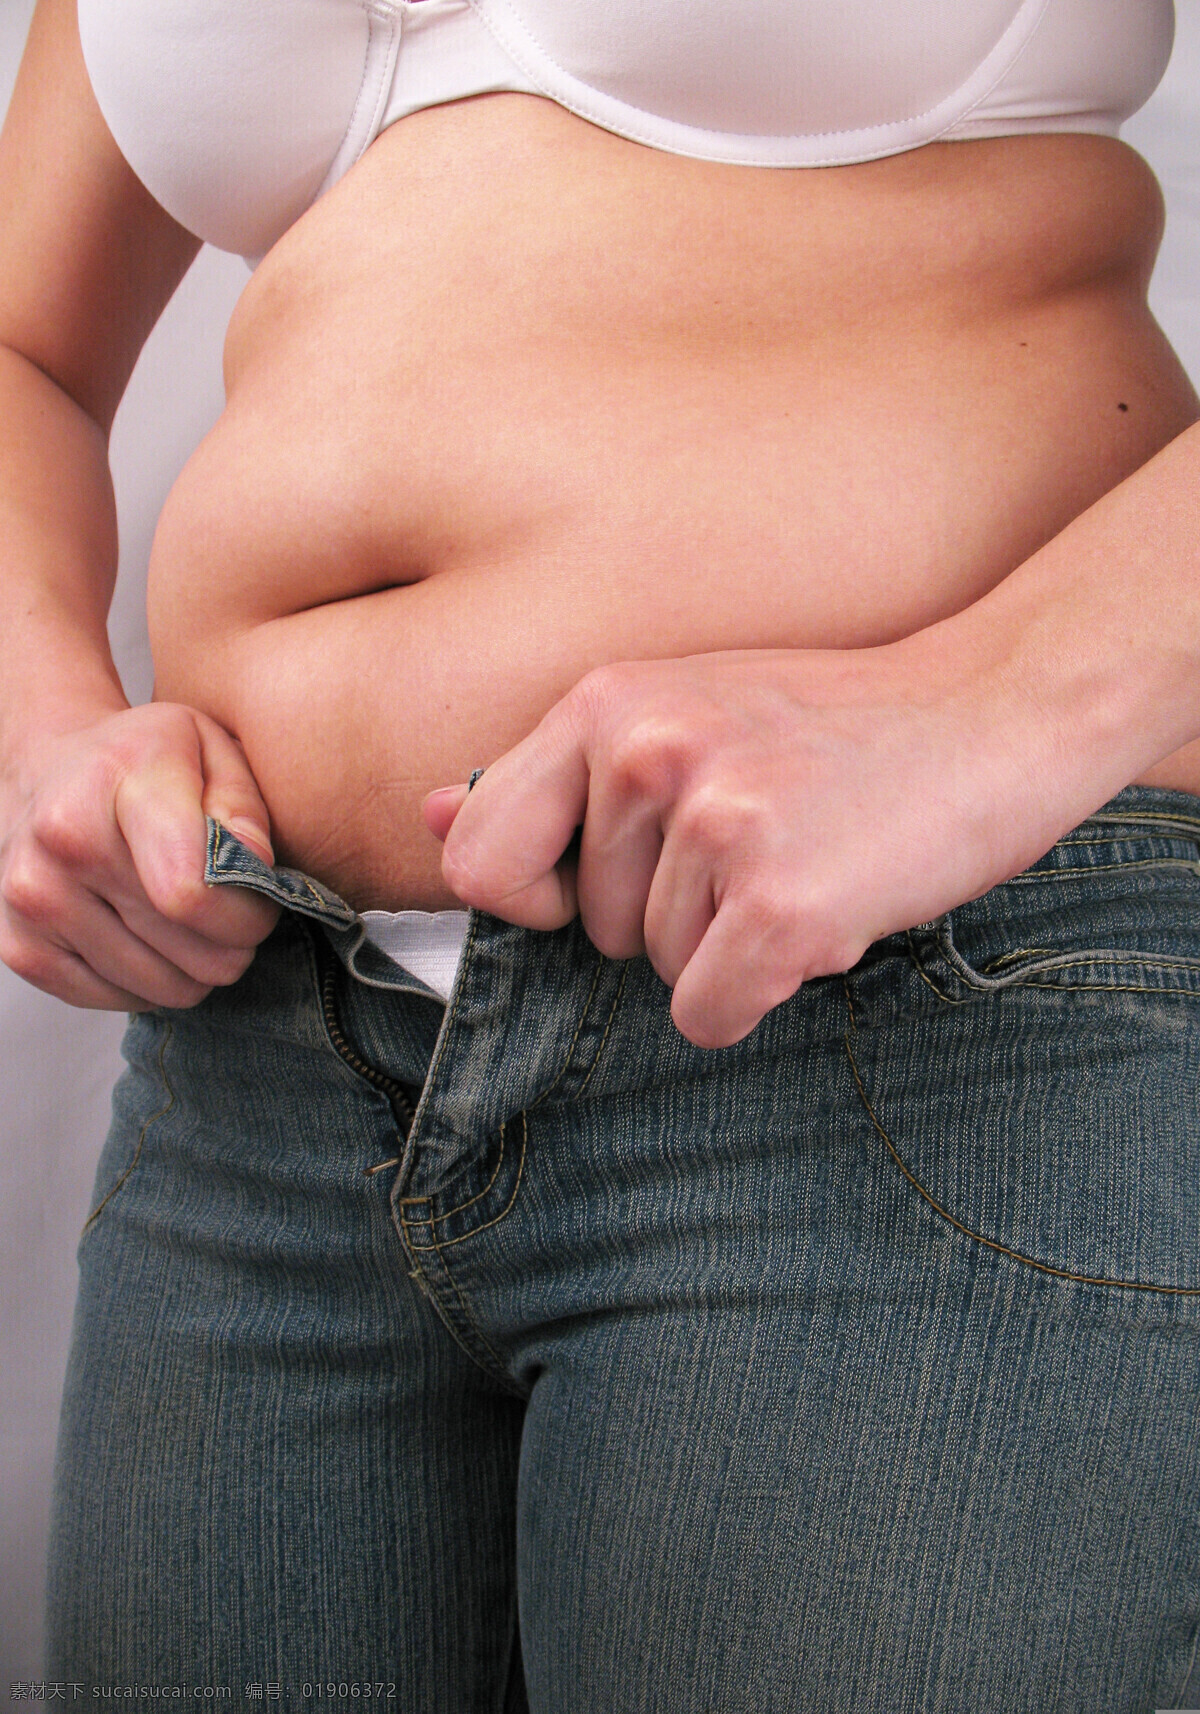 胖女人 胖子 女胖子 女人肥胖 瘦身 减肥 人物图库 人物摄影